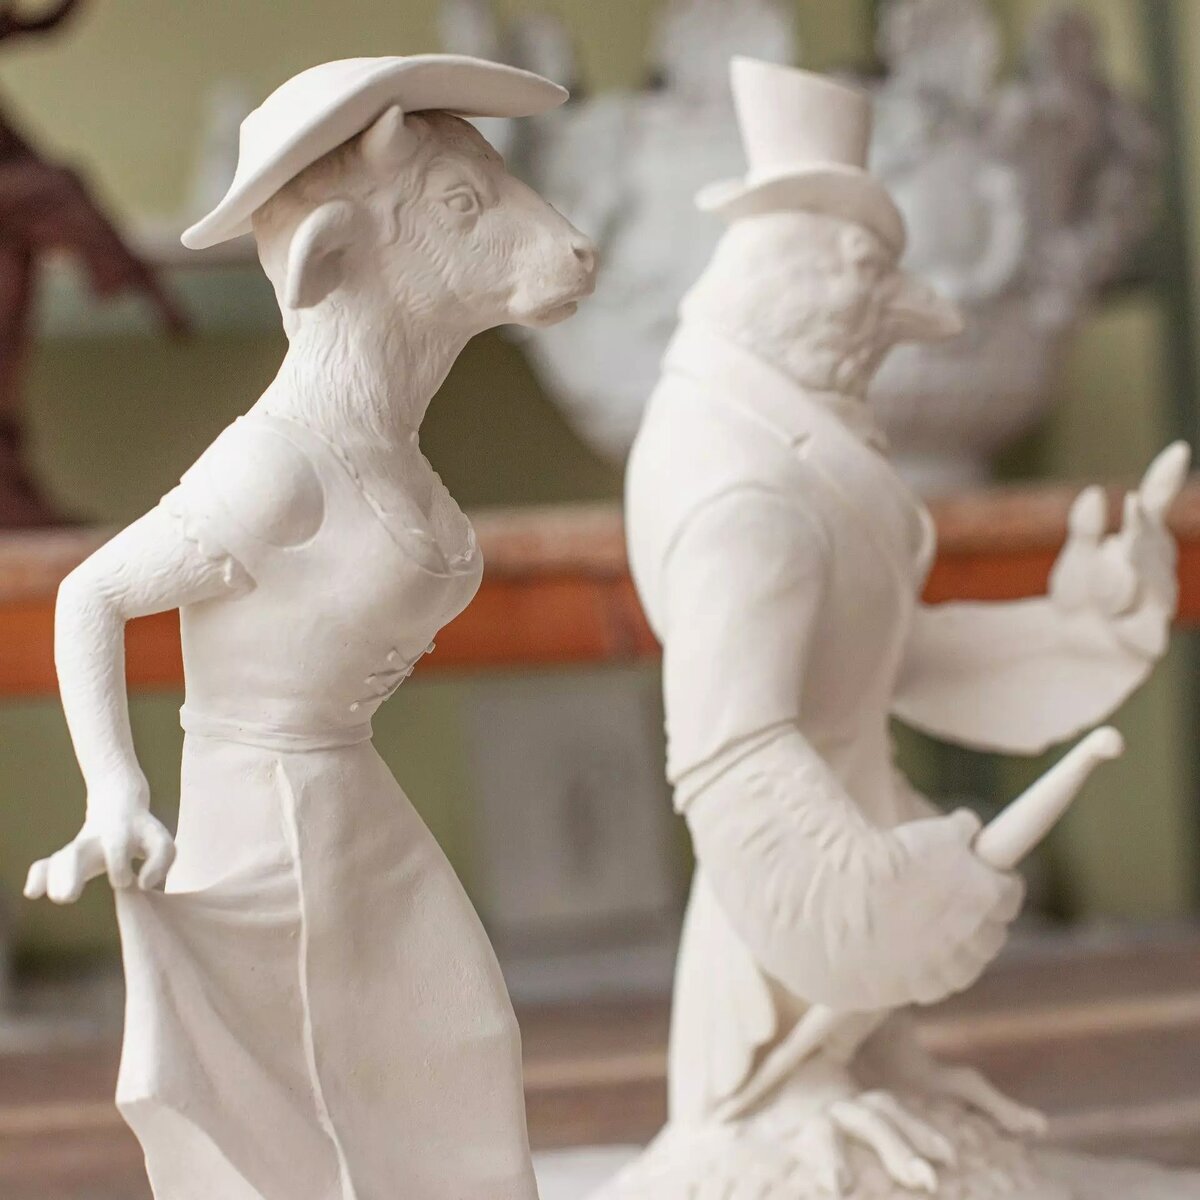 Сегодняшняя статья об оригинальной фарфоровой серии “Леди и Джентльмены”, созданной Максимилианом Хагштотц - молодым и очень талантливым скульптором, моделистом по фарфору Мейсенской мануфактуры.-3